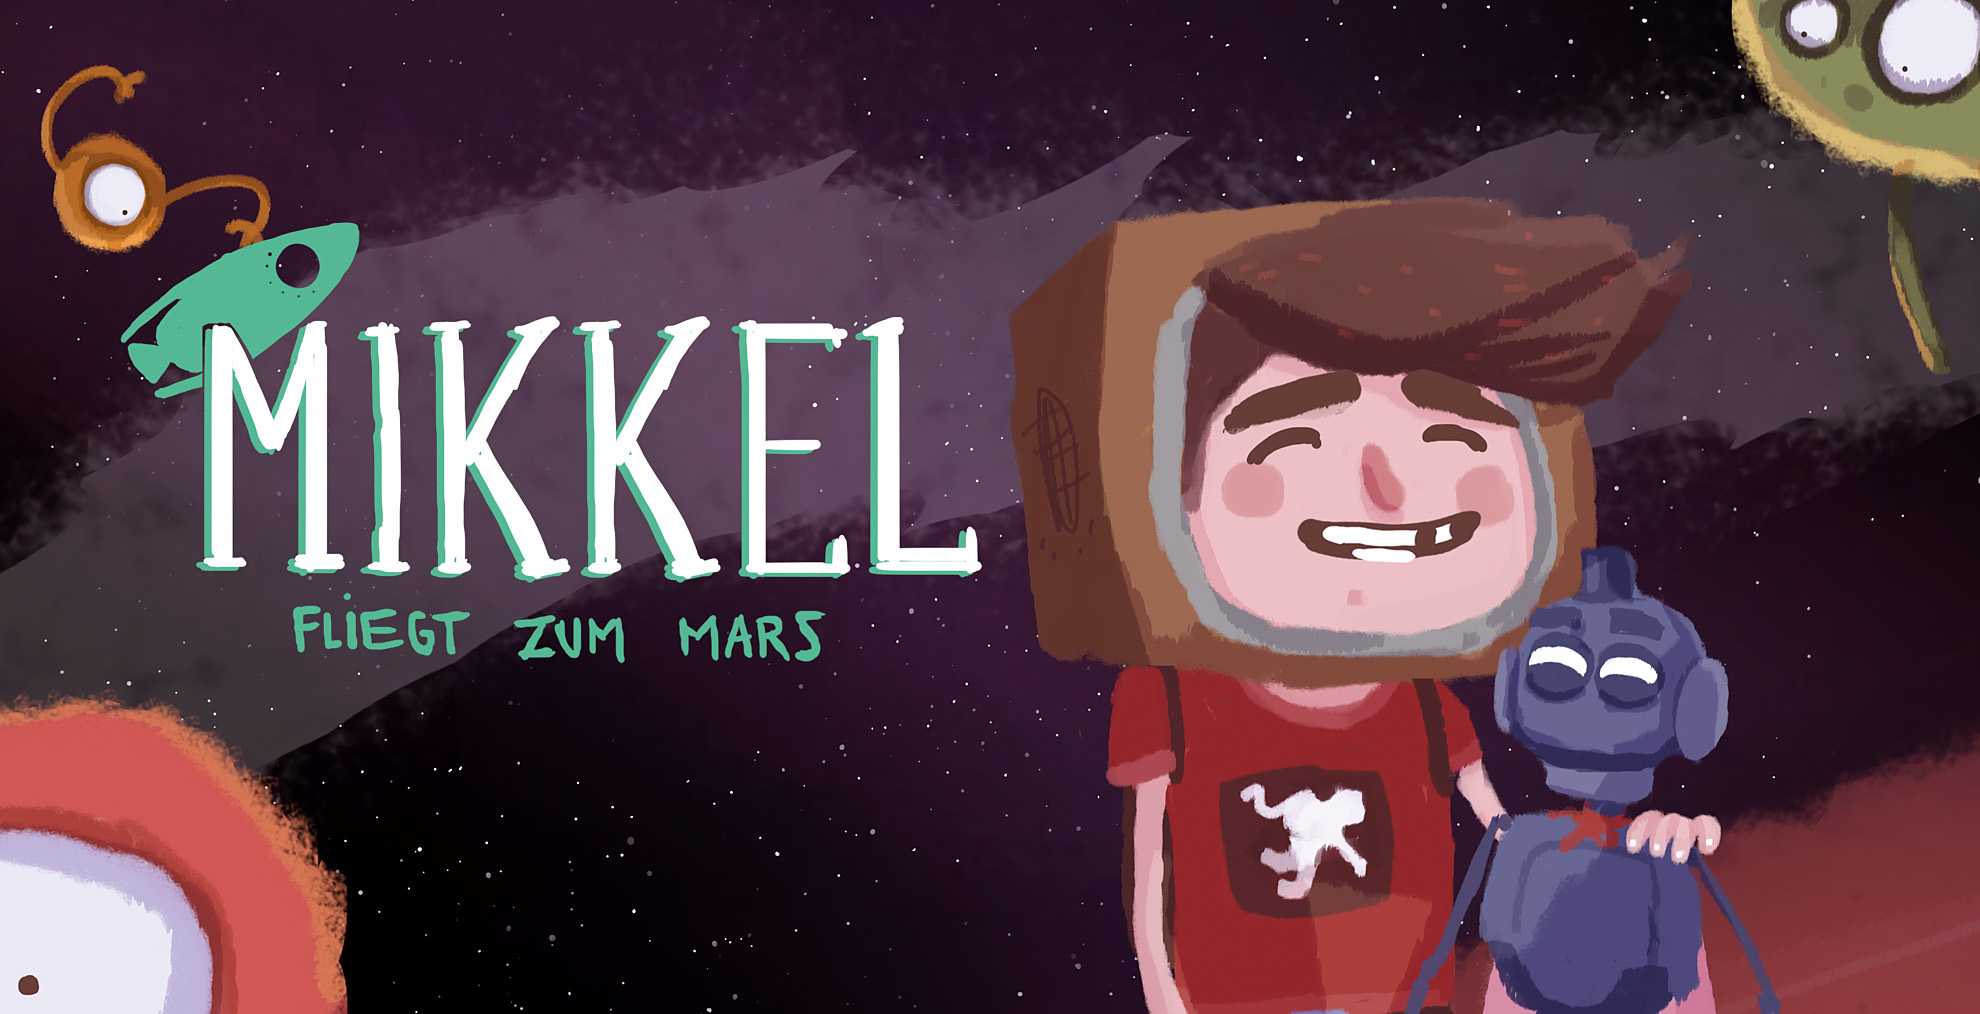 Mikkel fliegt zum Mars